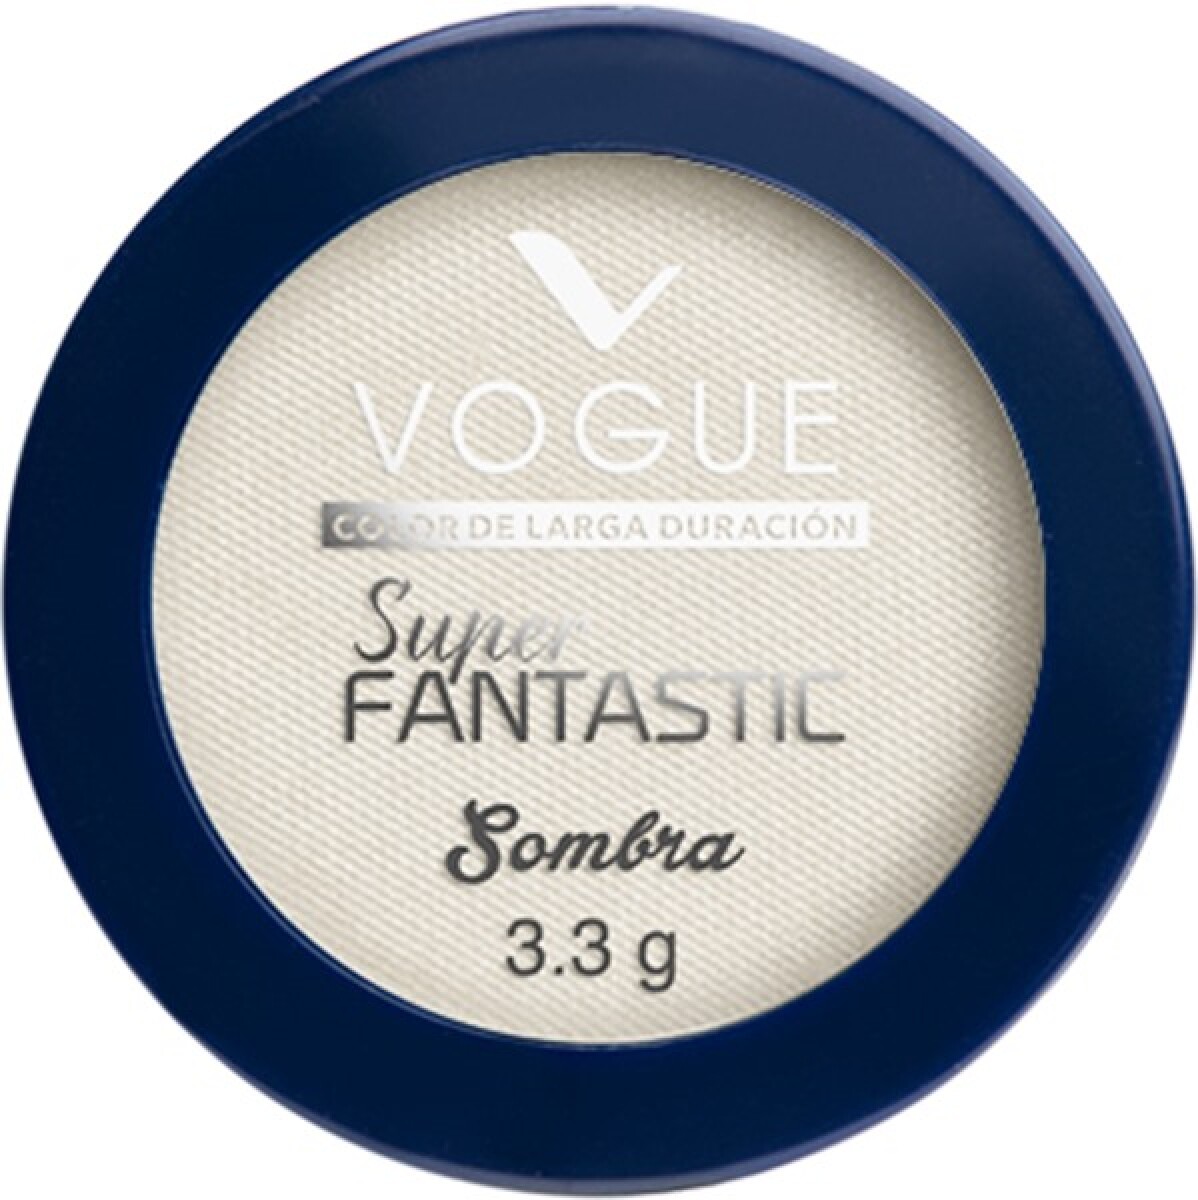 Sombra de Ojos Vogue Super Fantastic Blanco Nacarado 4g 